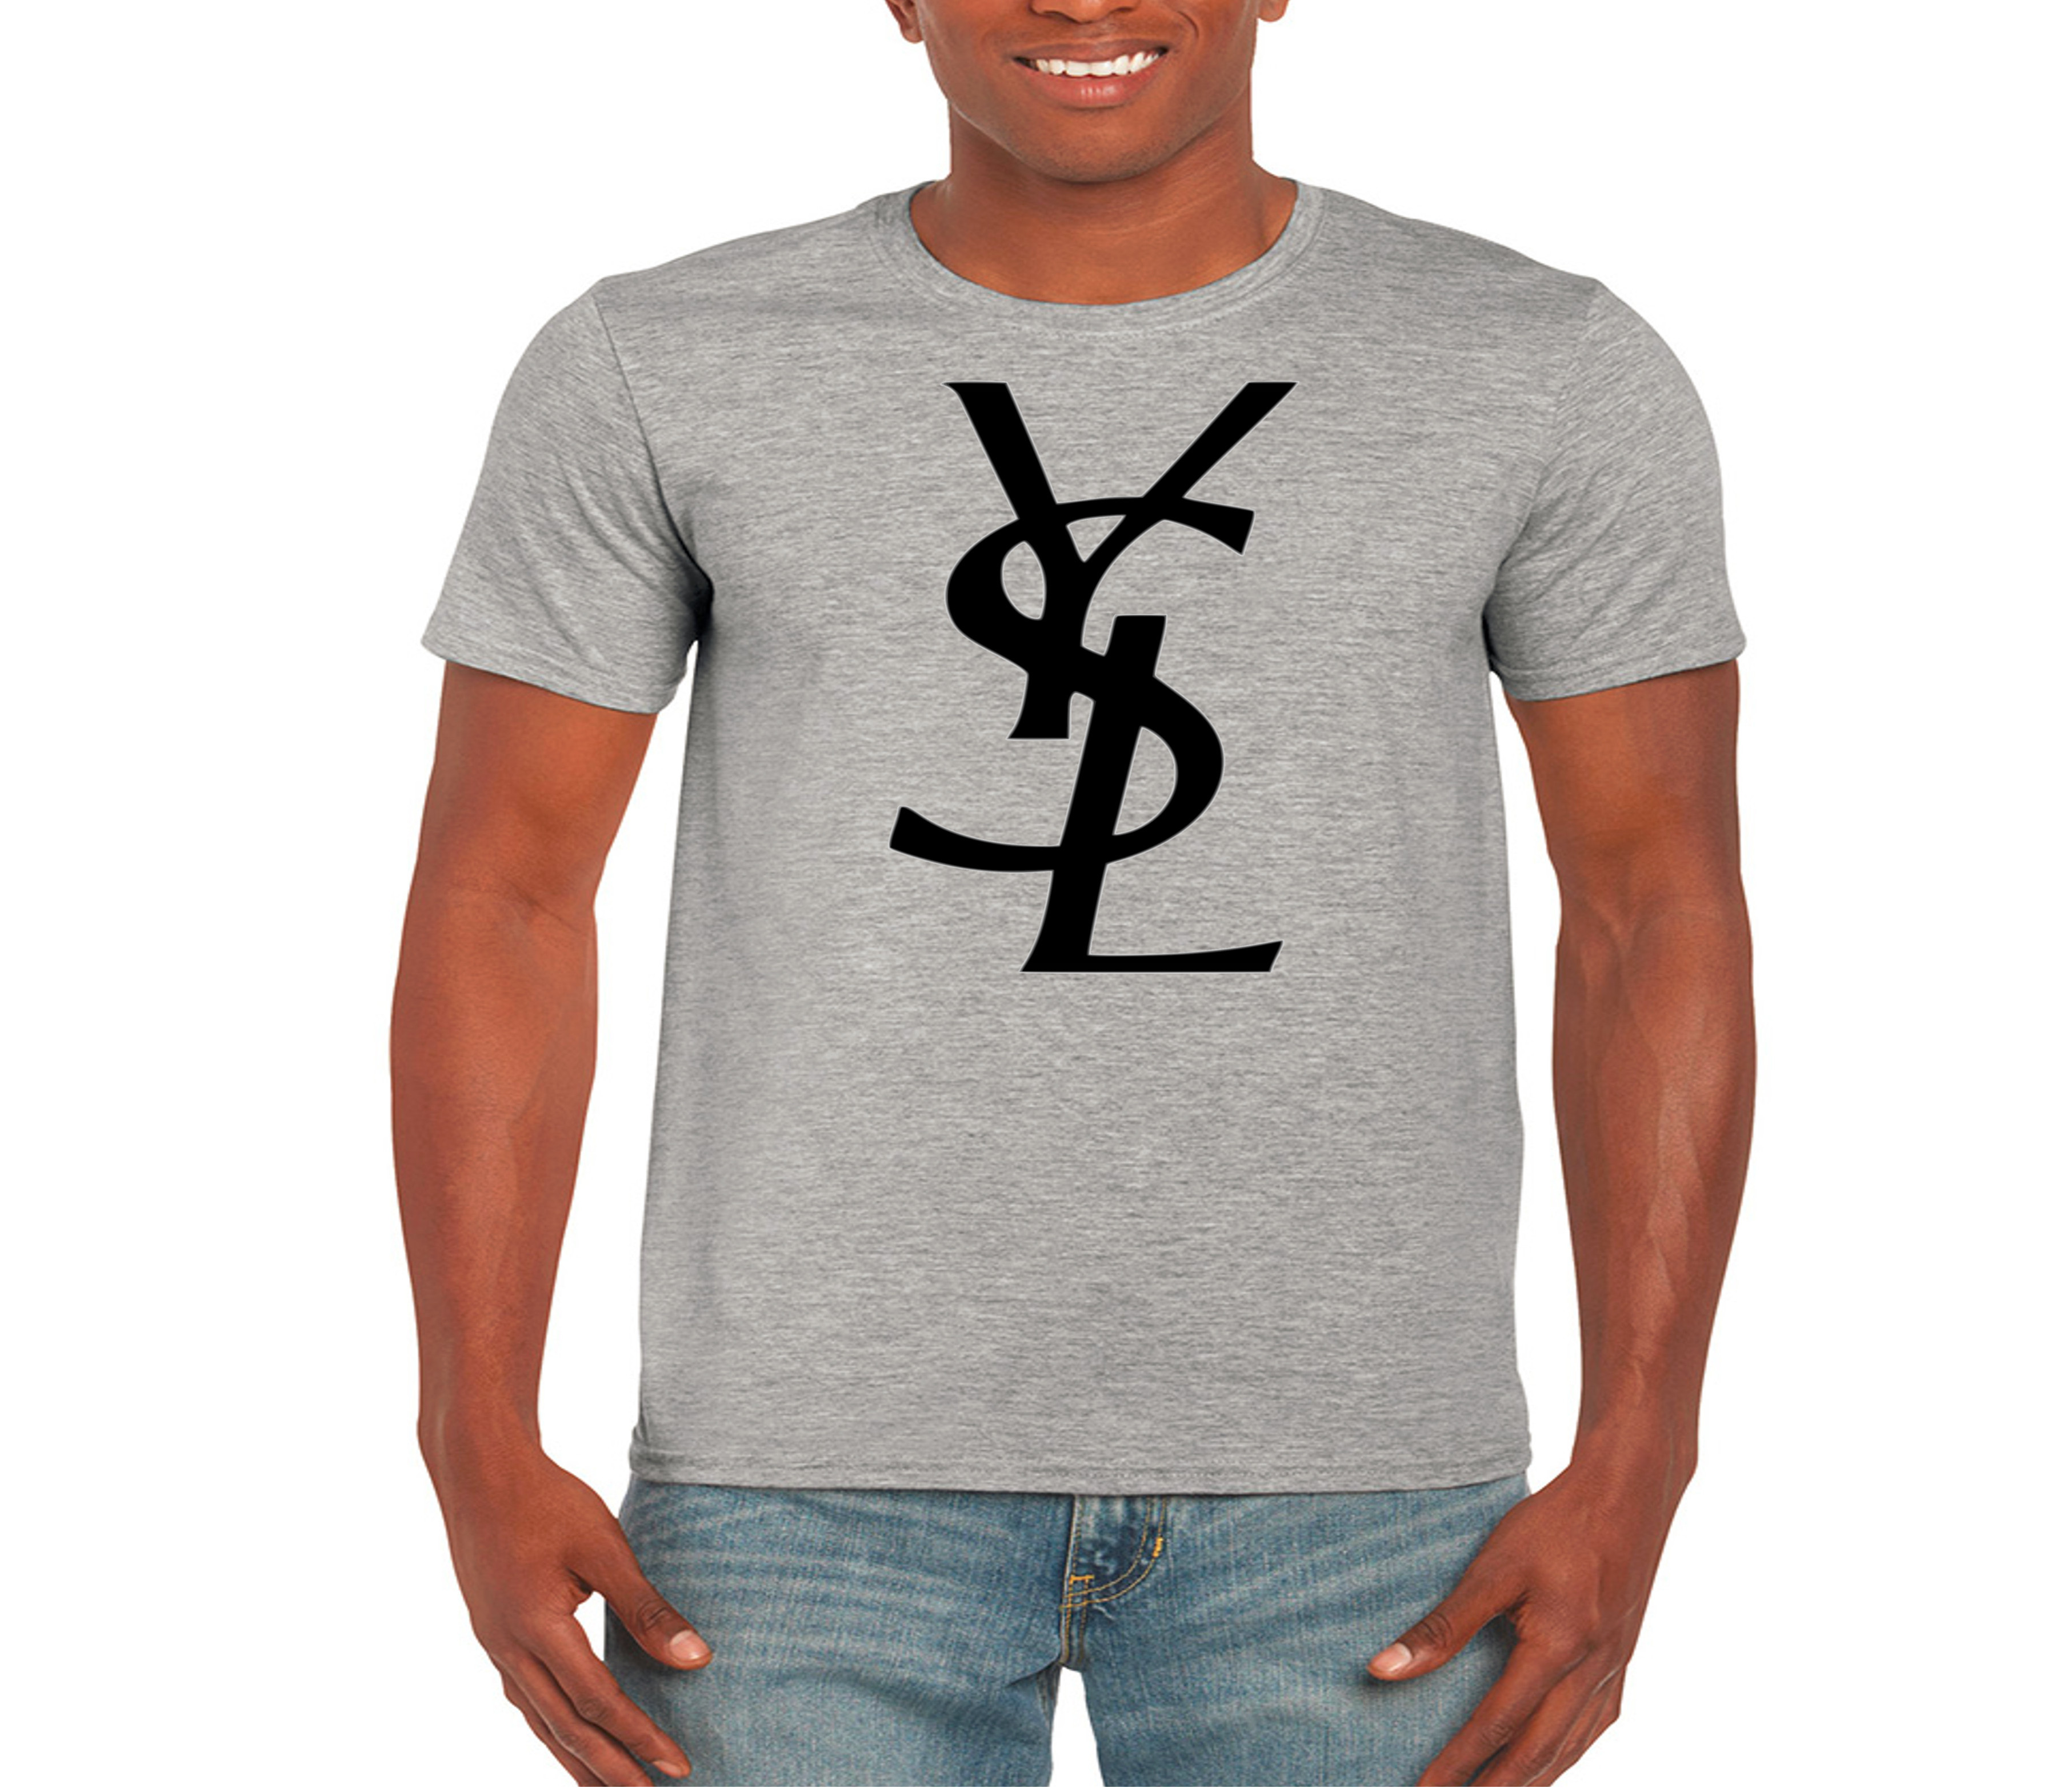 yves saint laurent inspired t shirt